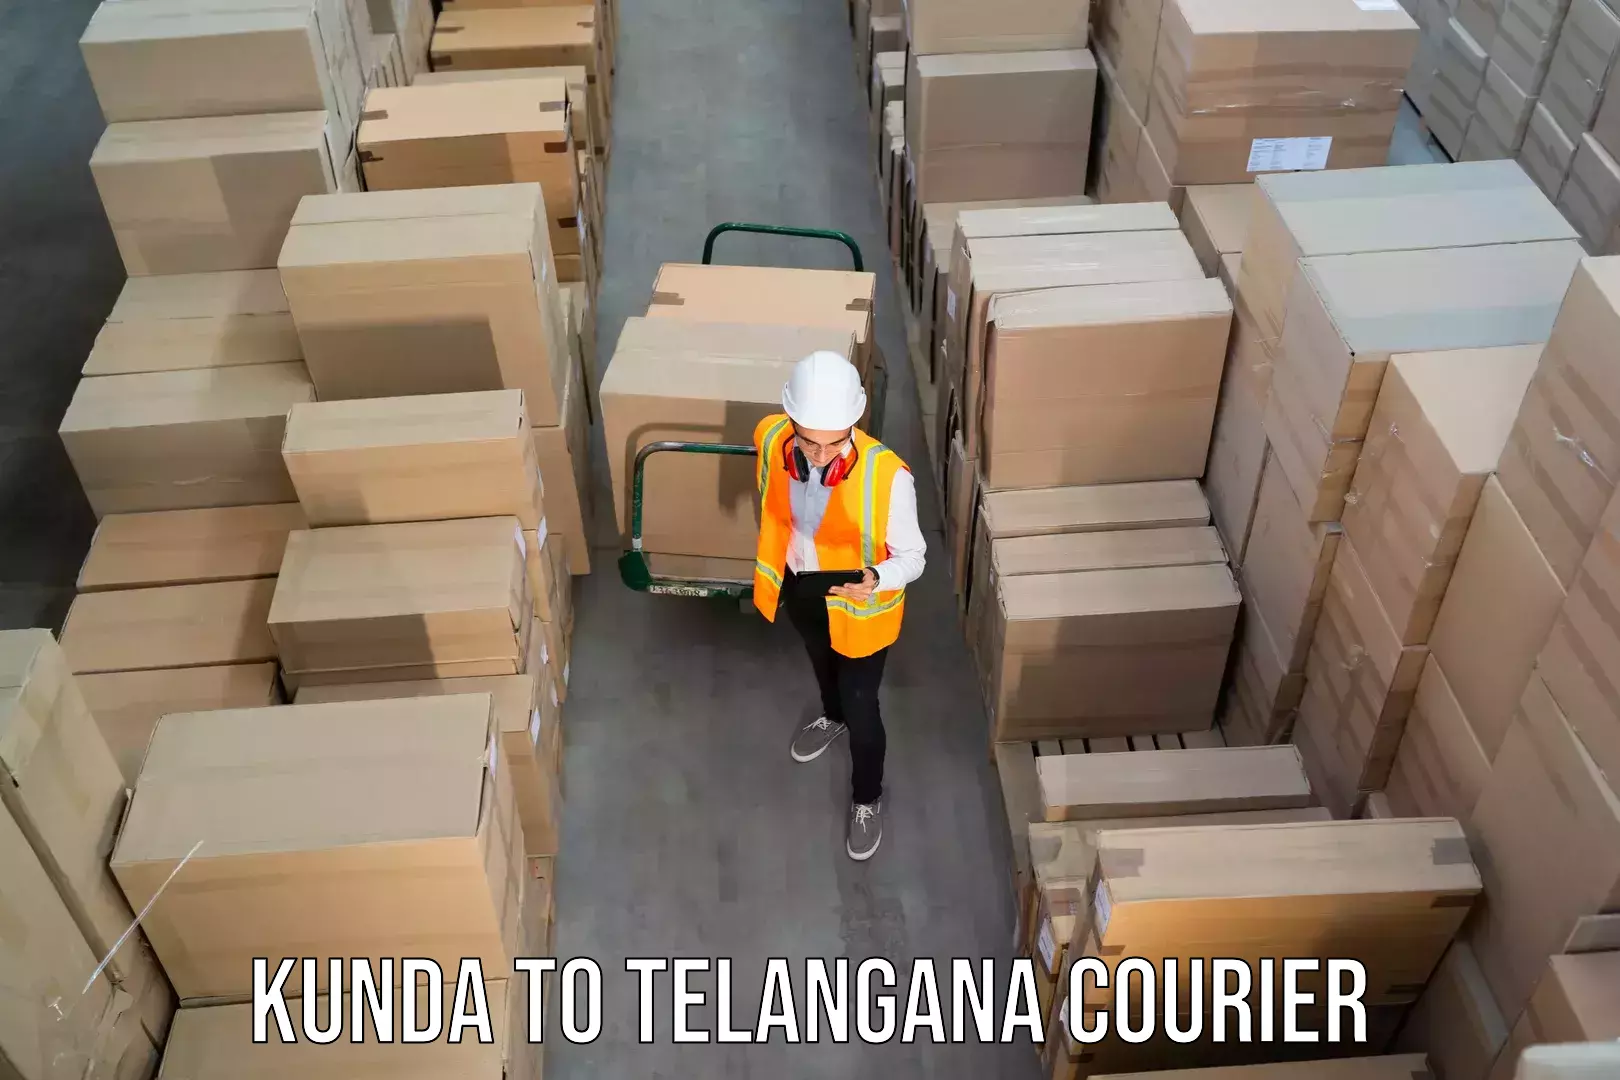 24/7 shipping services Kunda to Wyra